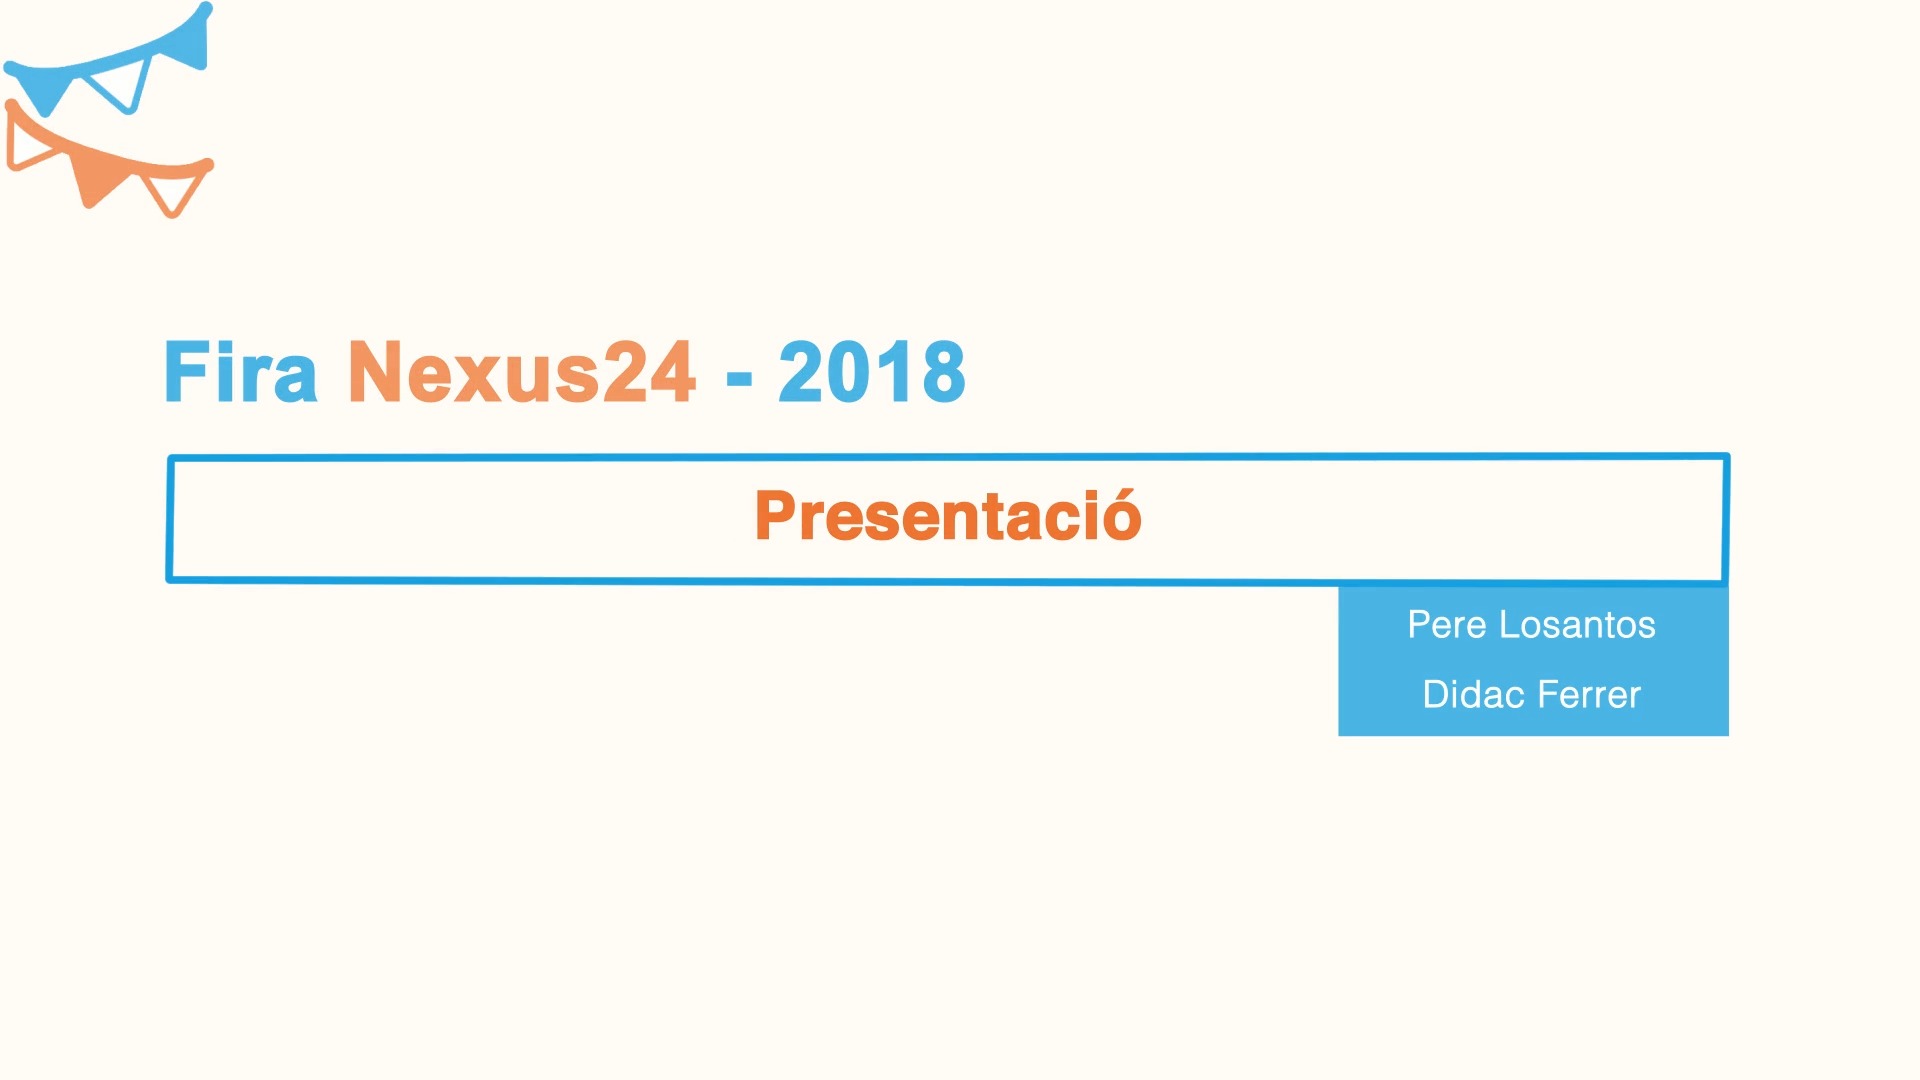 Fira Nexus24 (2018) - Presentació - Pere Losantos & Didac Ferrer